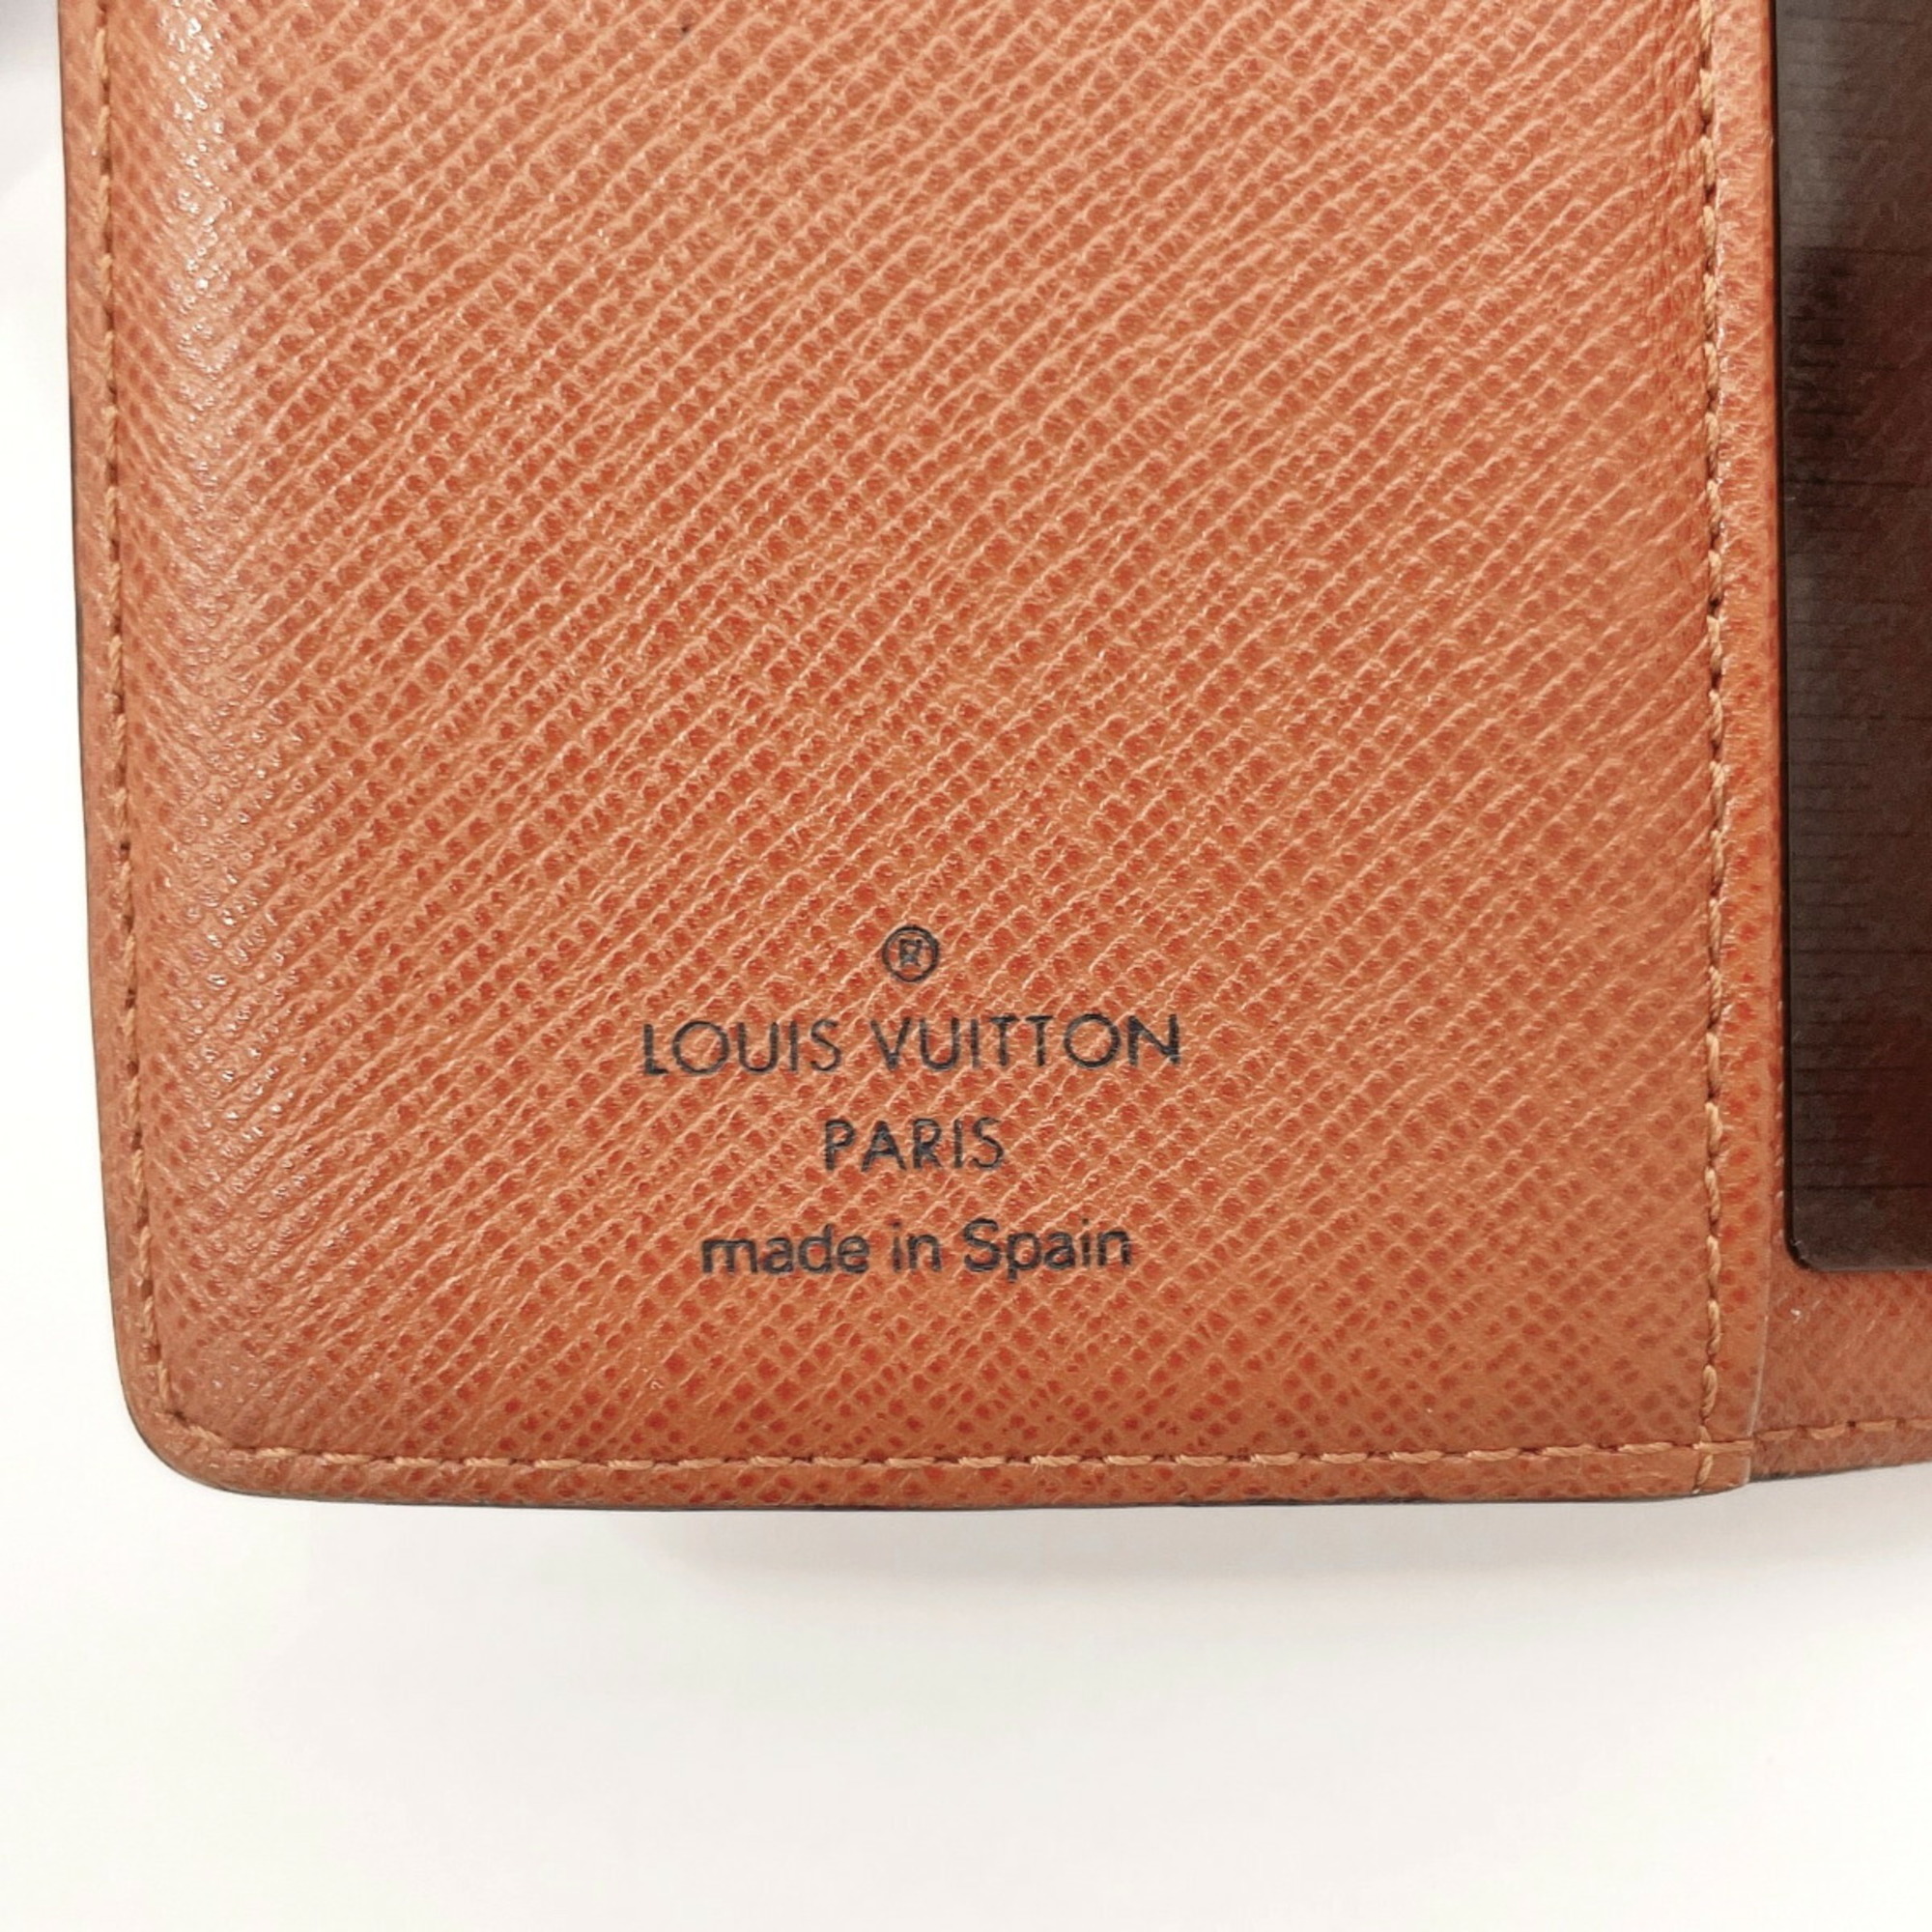 Louis Vuitton Agenda PM Notebook Cover Monogram Canvas LOUIS VUITTON R20005 Unisex Brown